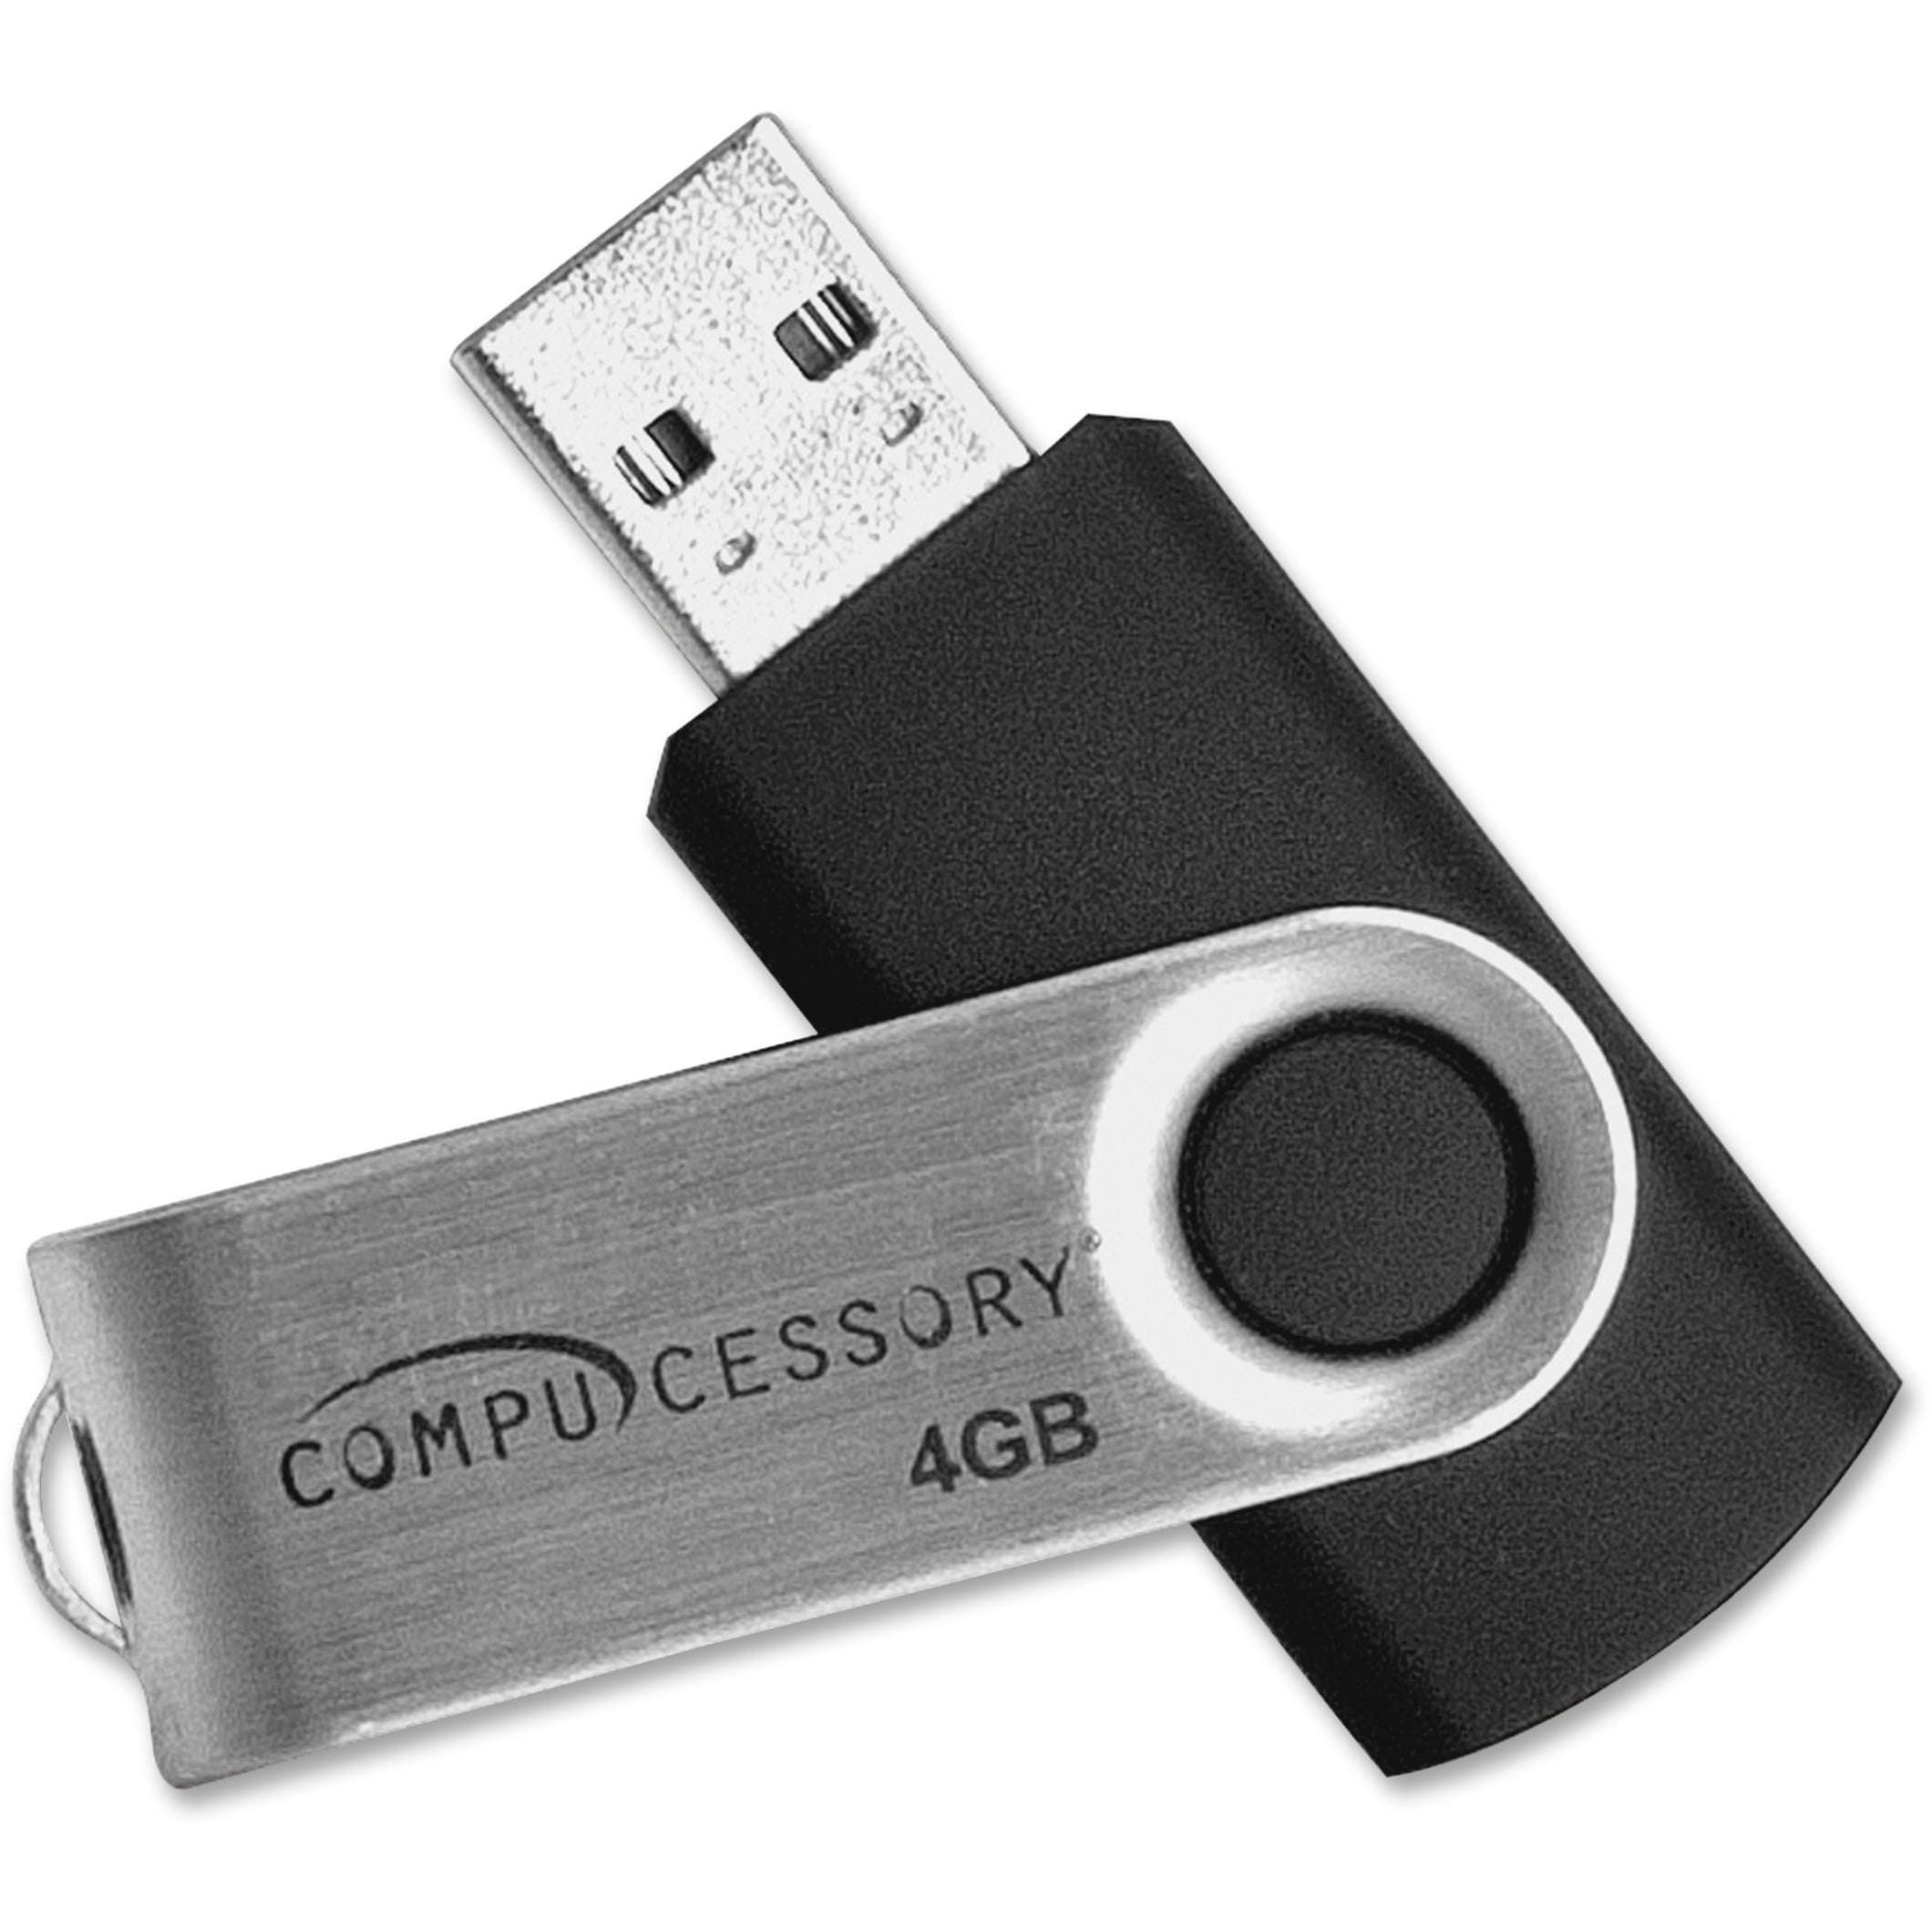 Compucessory, 4GB USB 2.0 Flash Drive, 1 Aluminum Walmart.com